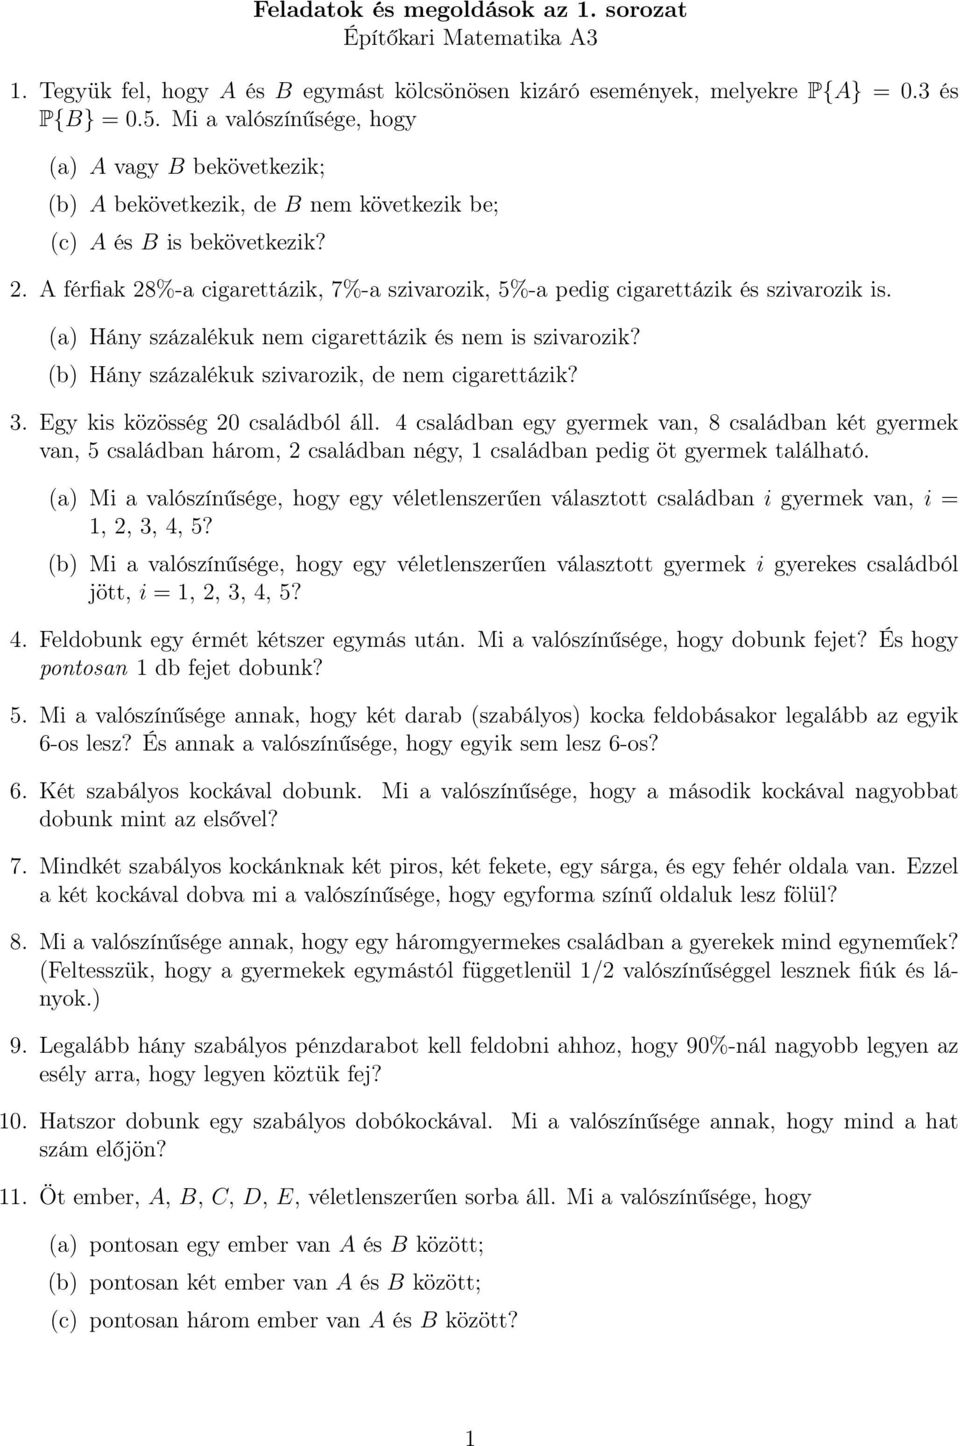 Feladatok és megoldások az 1. sorozat Építőkari Matematika A3 - PDF  Ingyenes letöltés